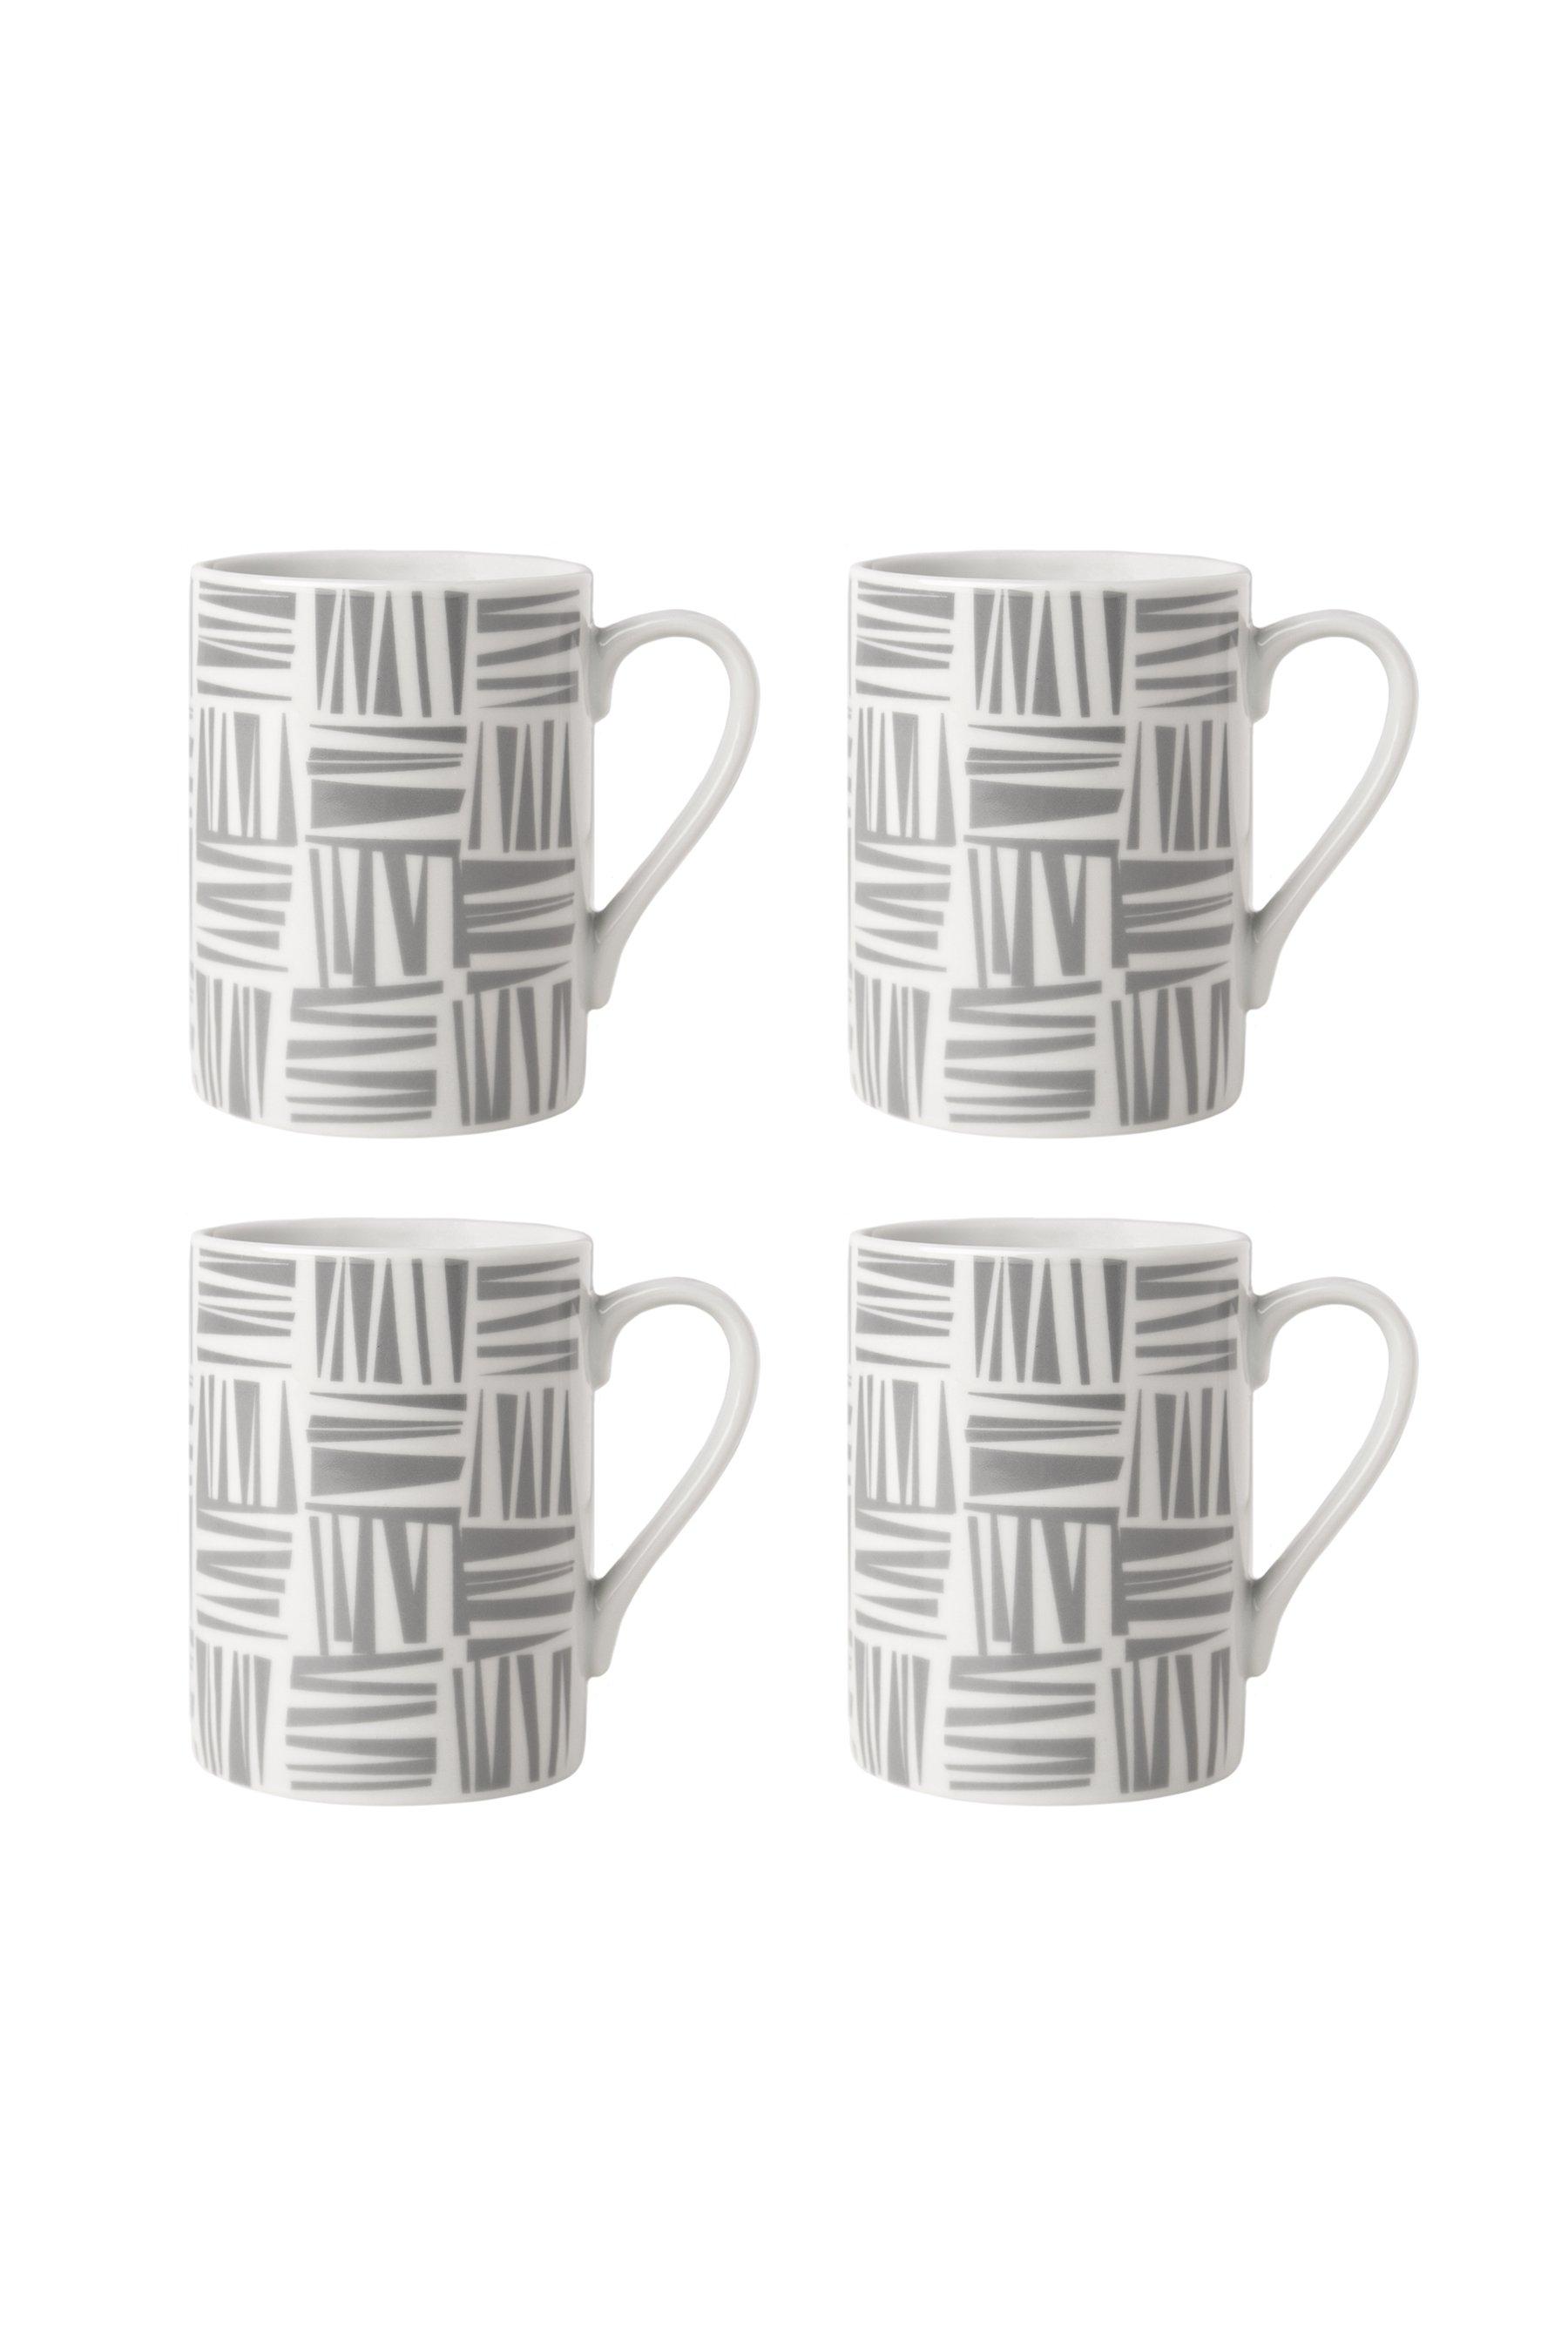 Sabichi Brooklyn 4-Piece Mug Set - Grey - Porcelain